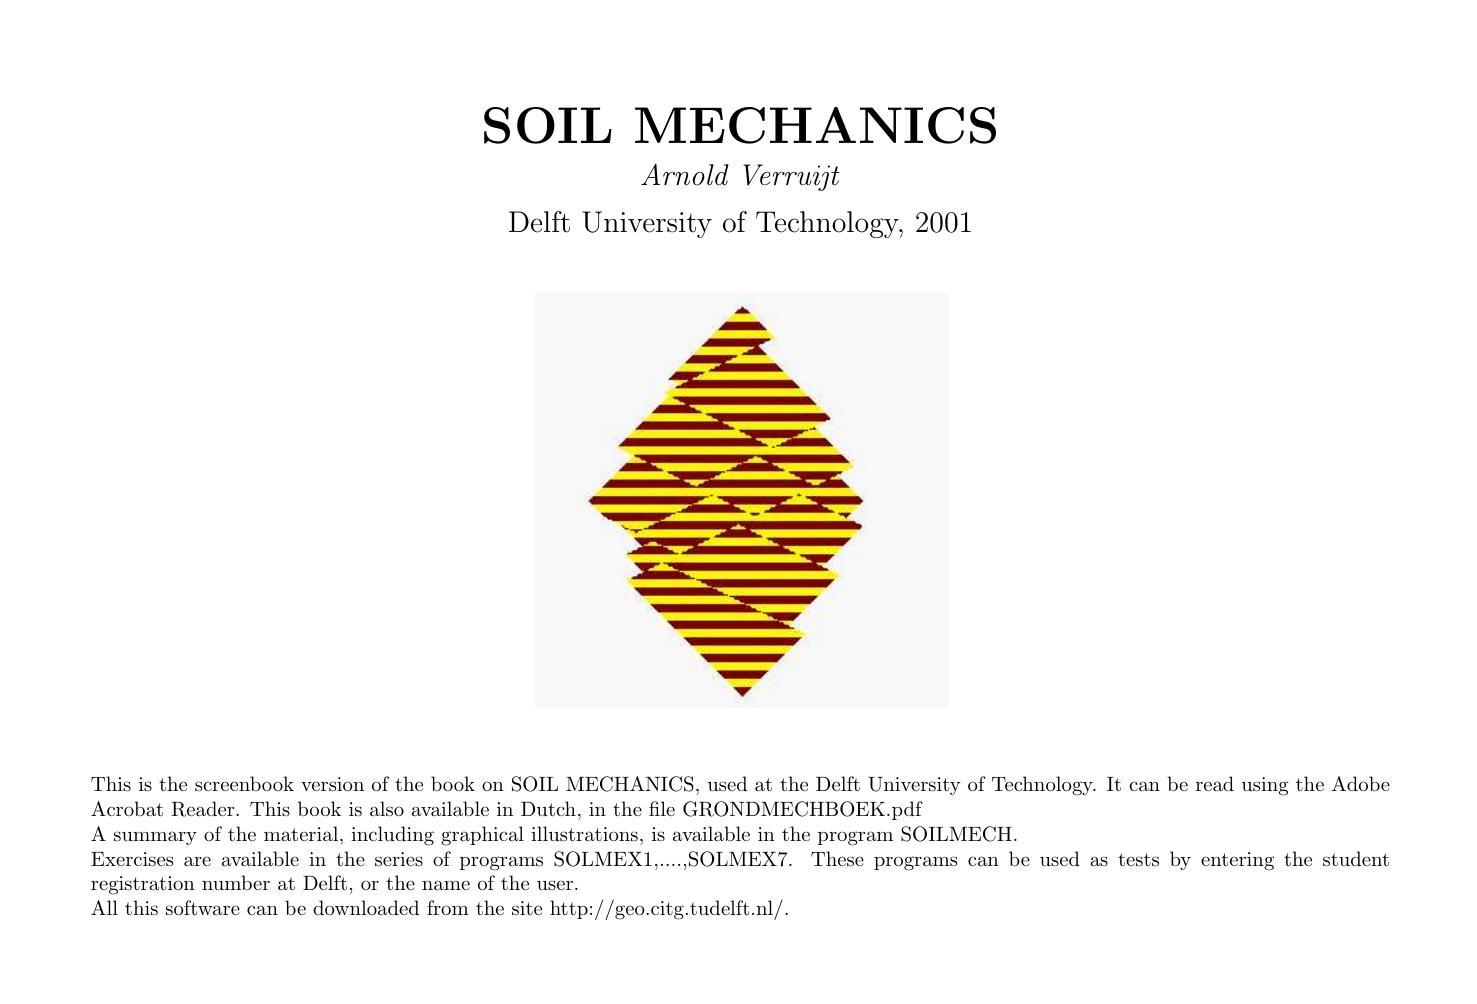 SOIL MECHANICS 2001